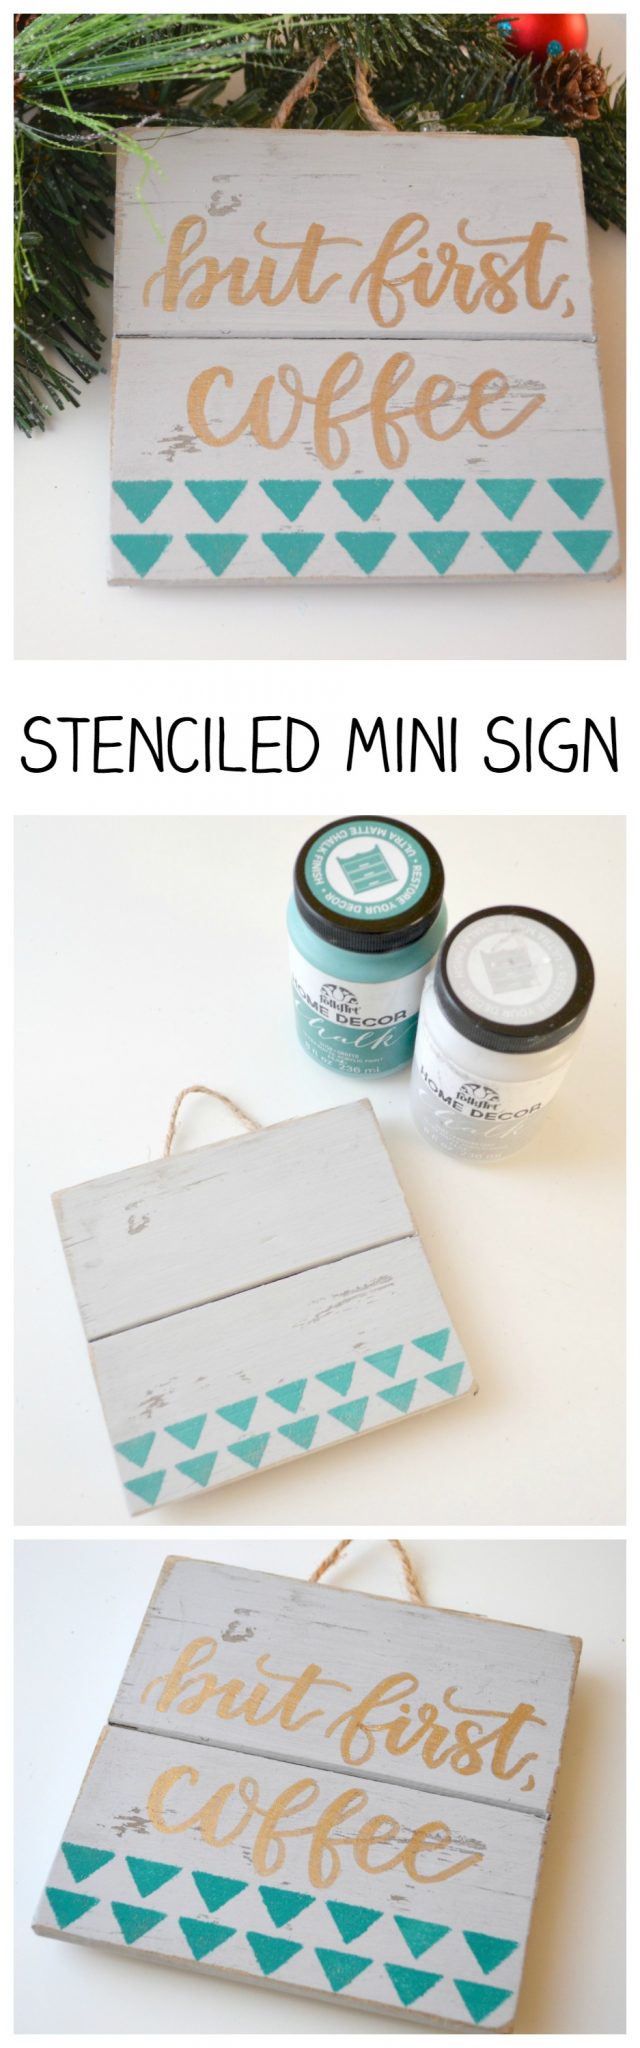 Stenciled Mini Sign